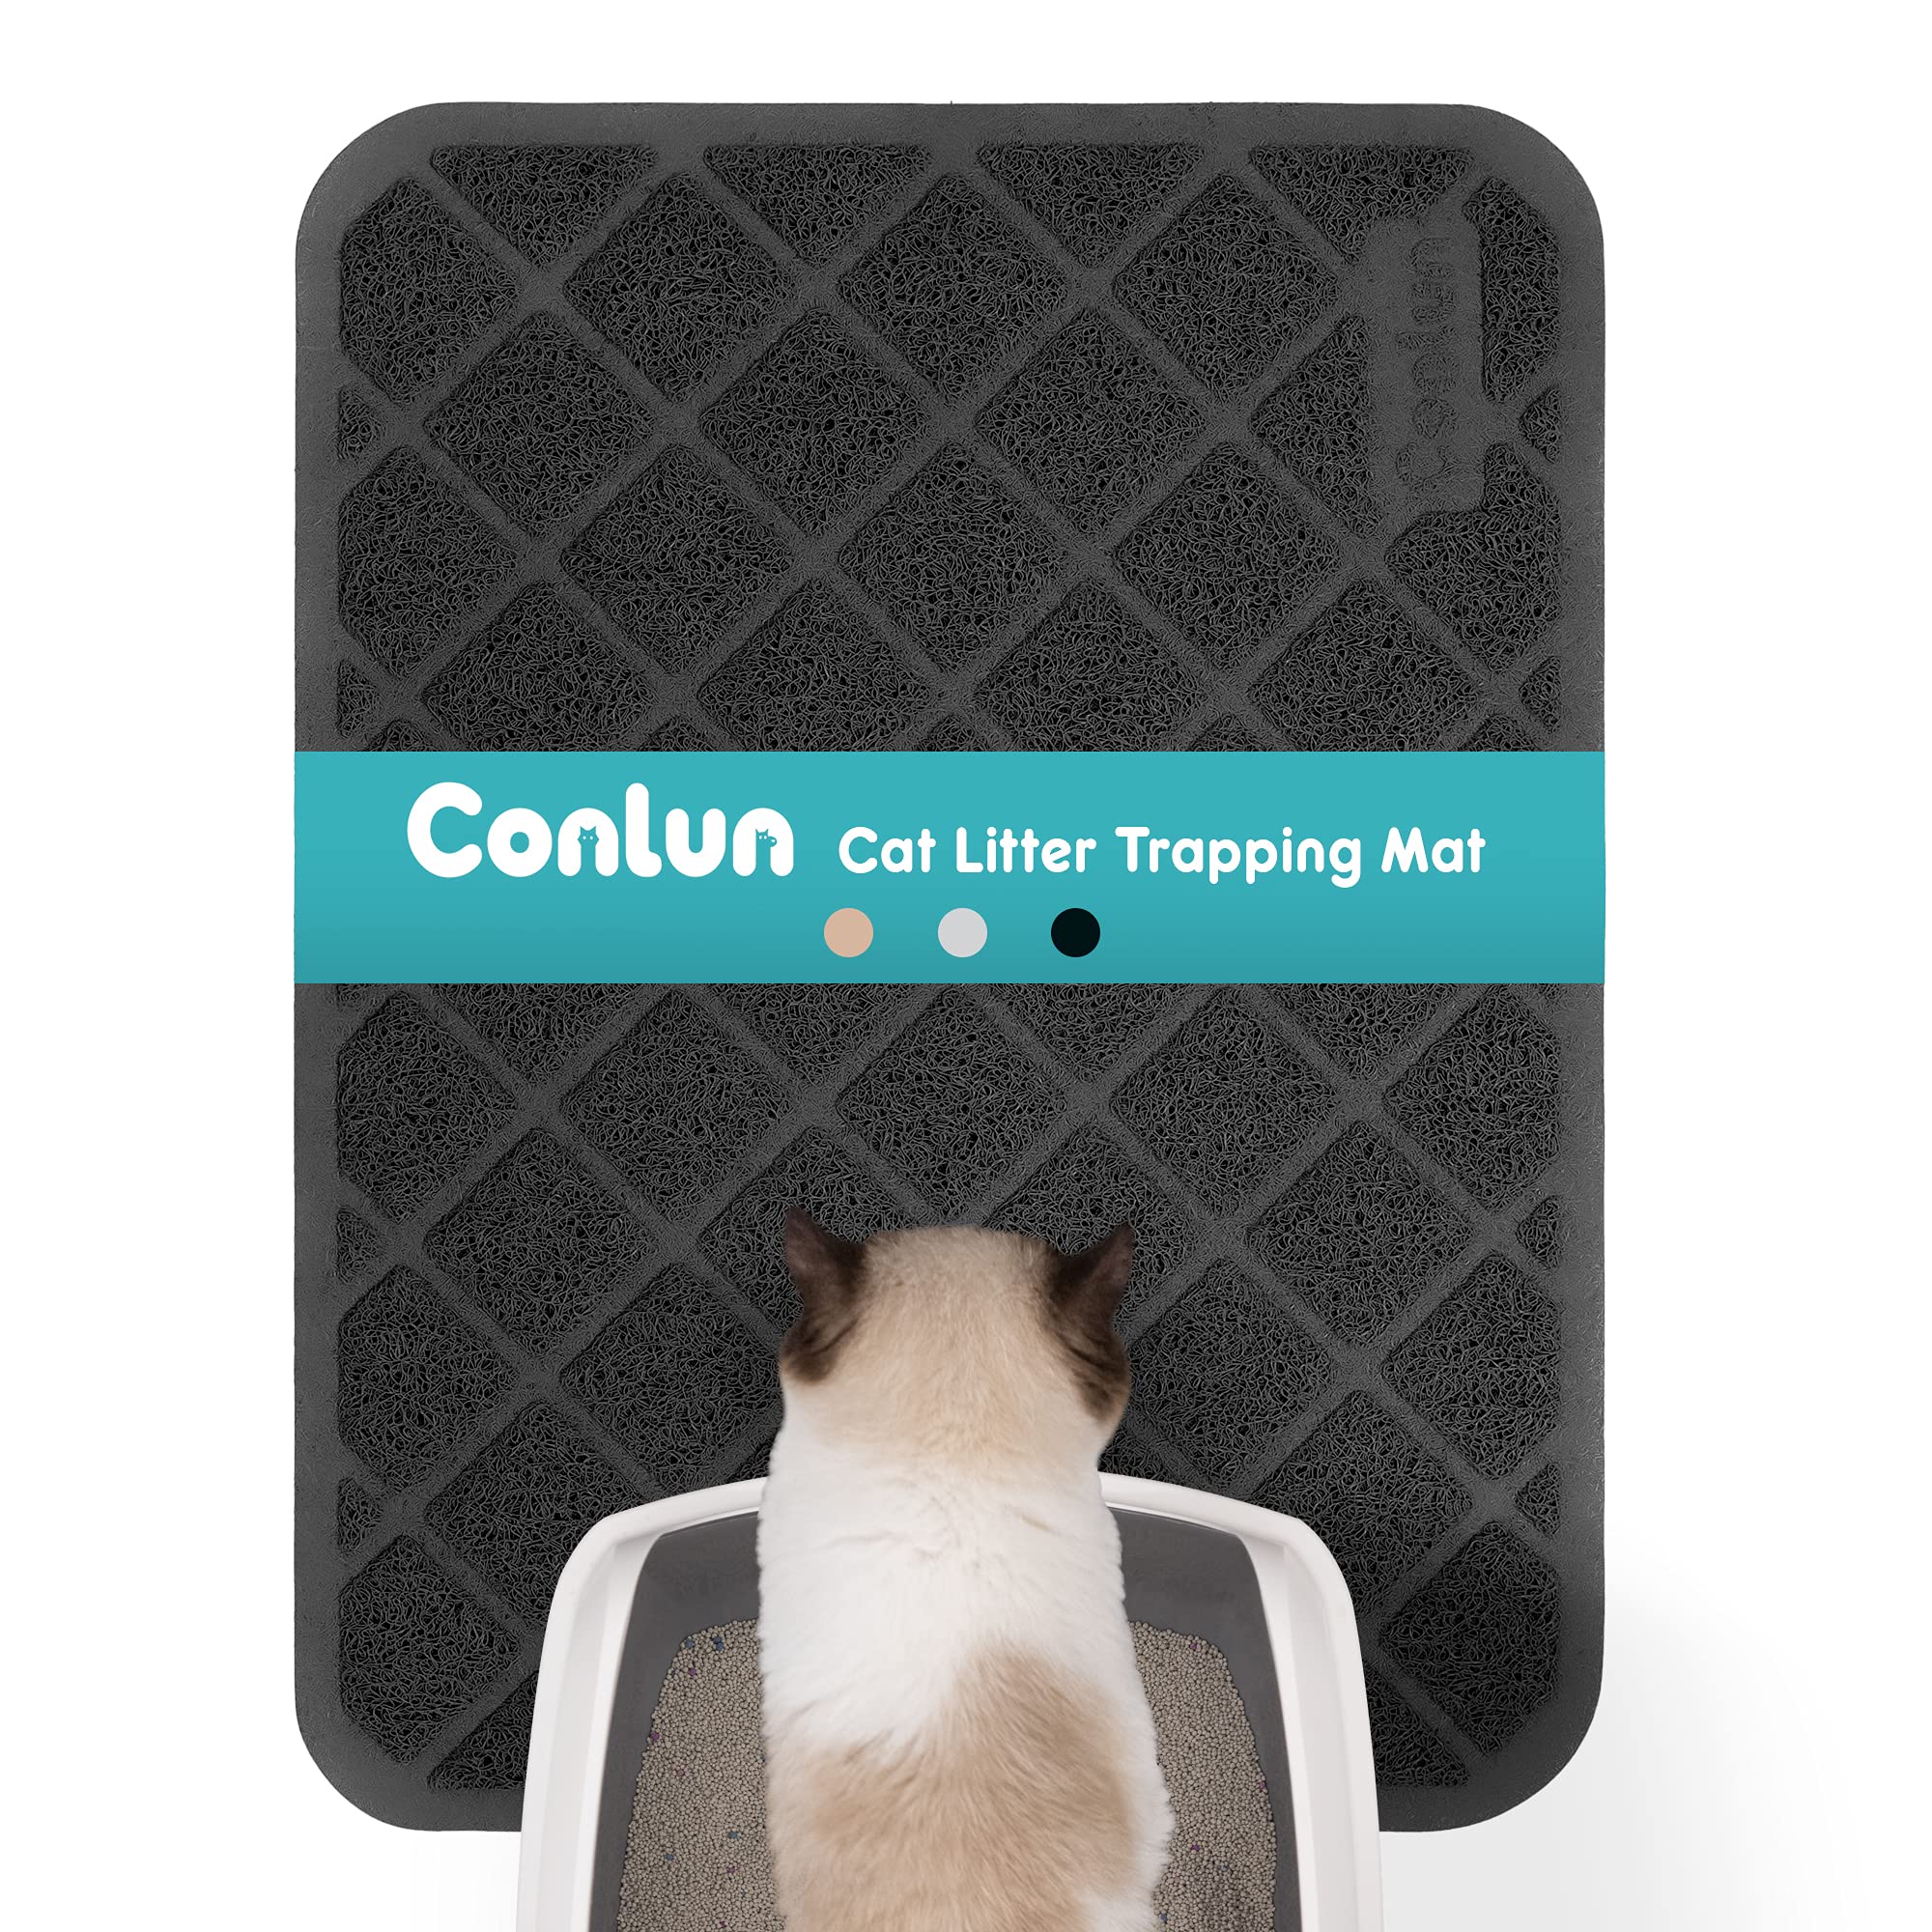 http://conlunpet.com/cdn/shop/products/cat-litter-mat-cat-litter-trapping-mat-honeycomb-double-layer-design-small-black-01.jpg?v=1676346295